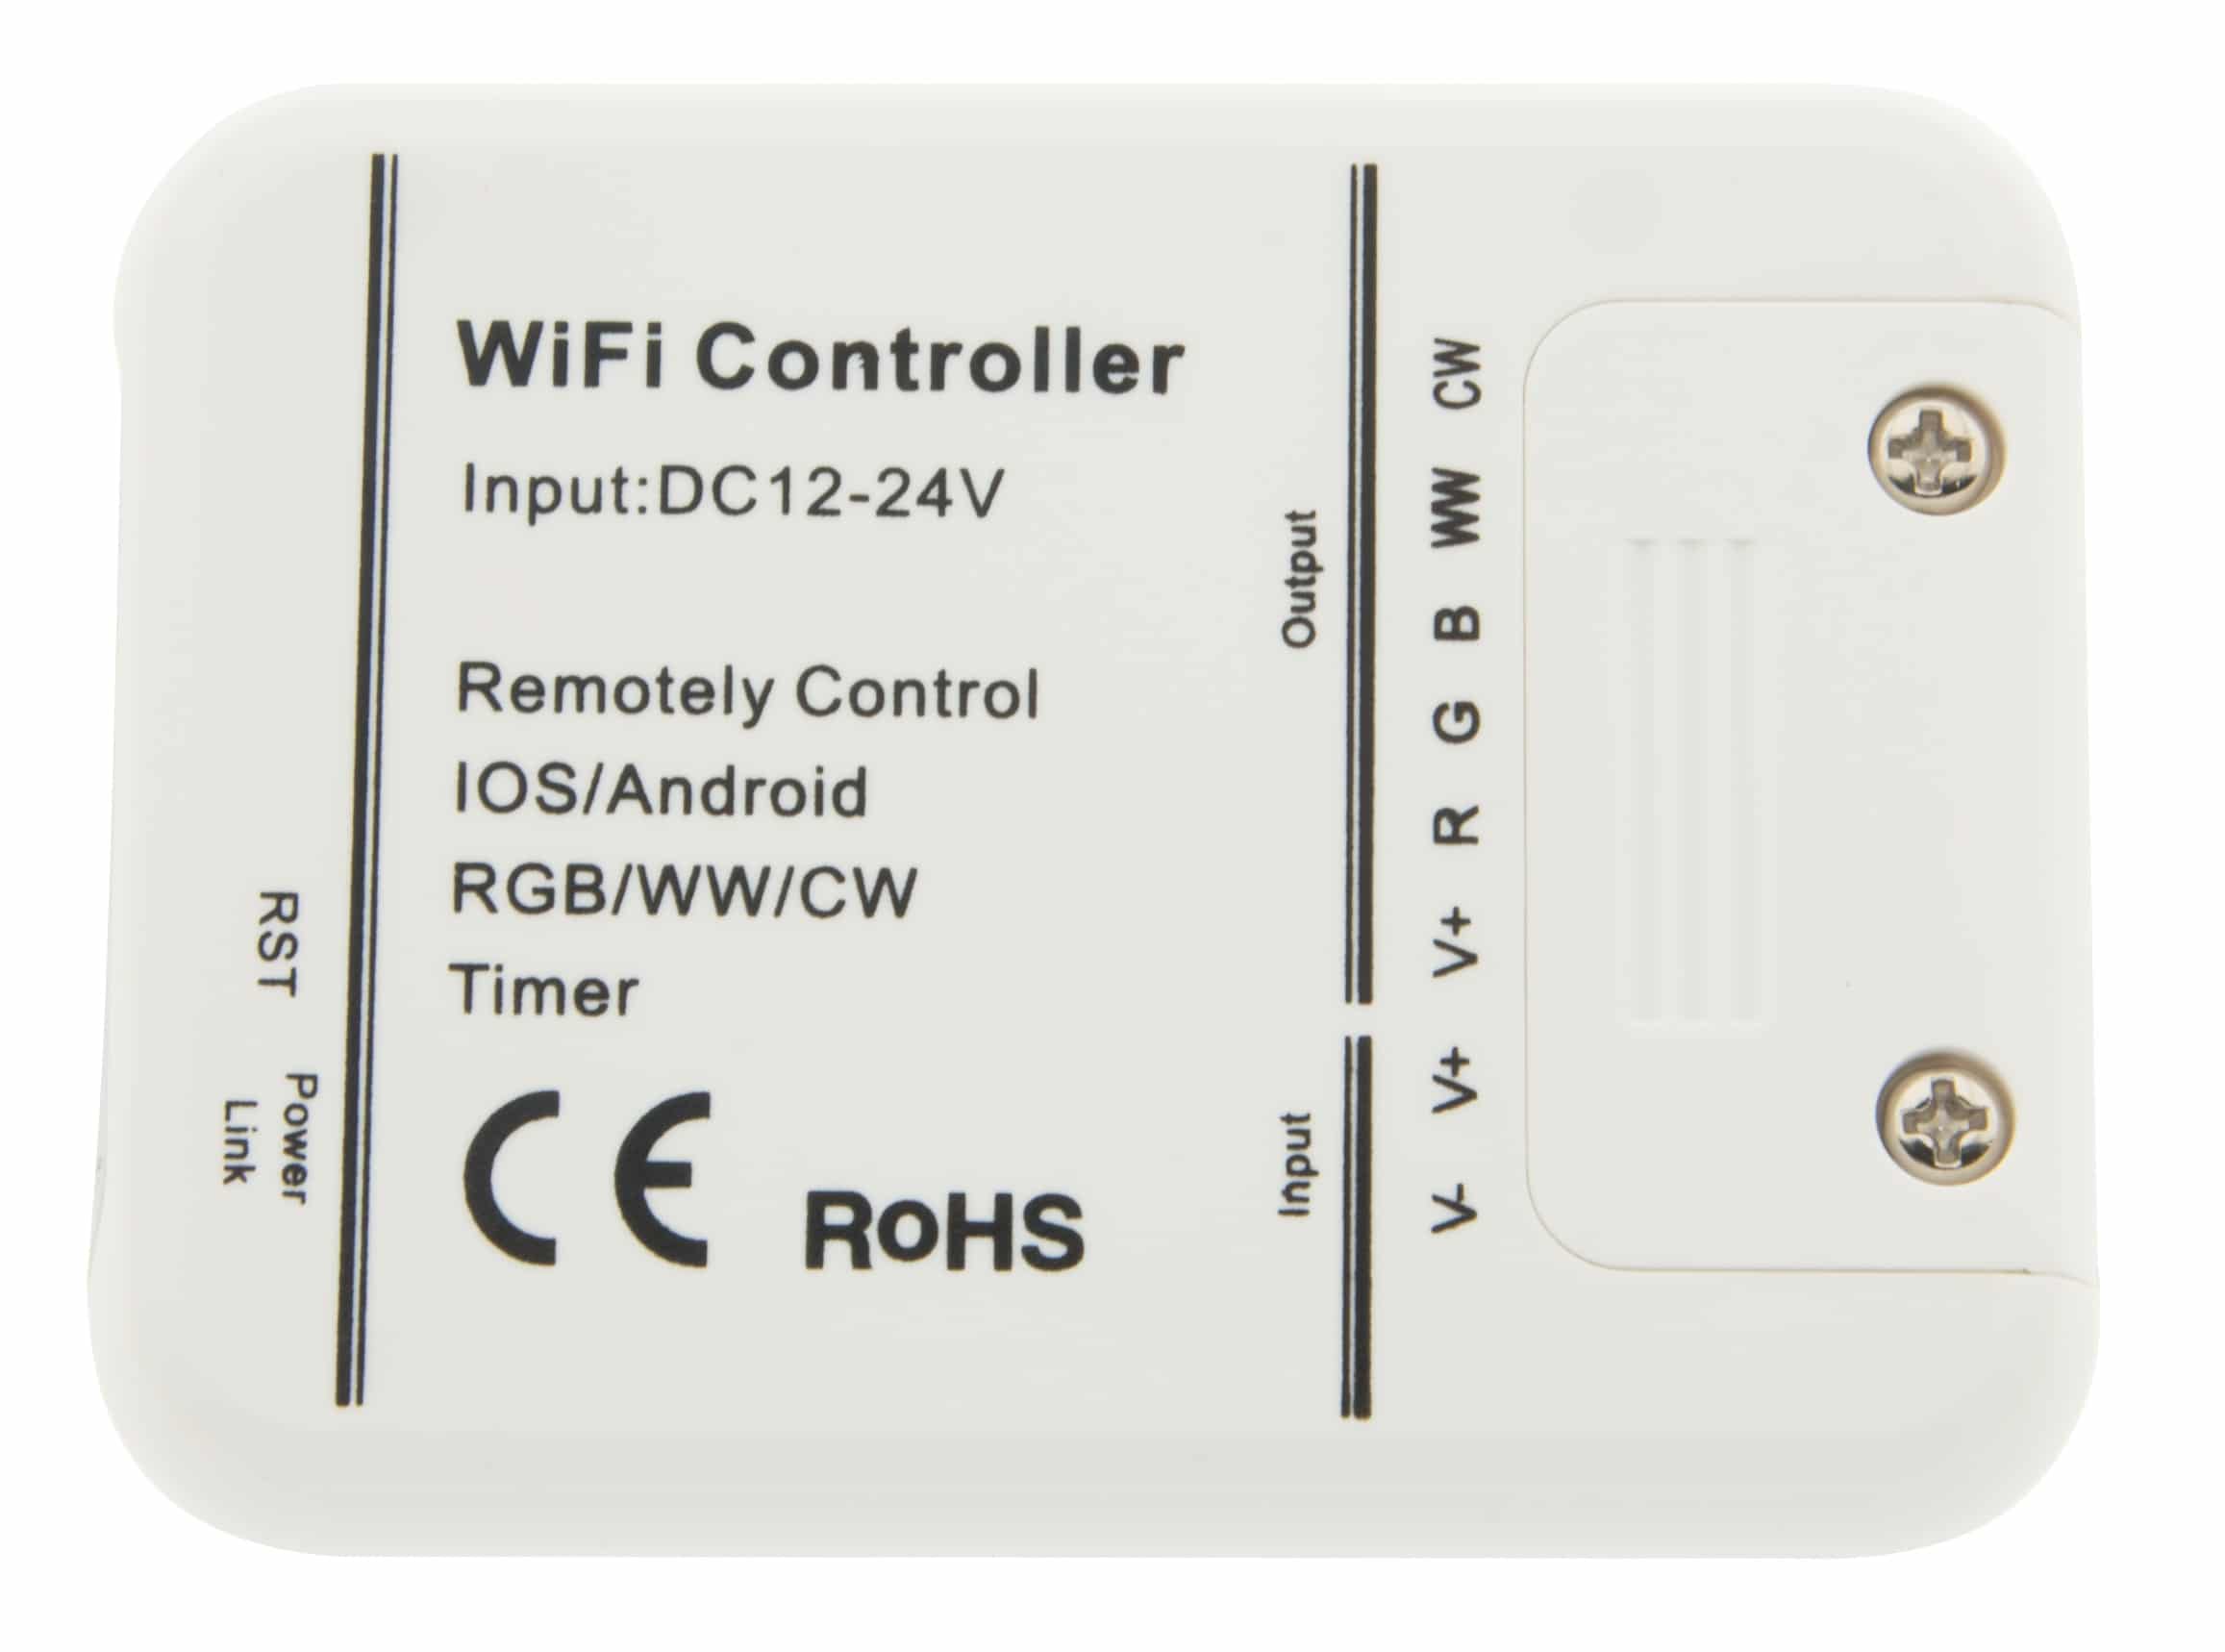 https://autled.com/daten/foto/Produktfoto_LED-WiFi-Controller-5-Kanal-iOS-Android_1_v1.jpg